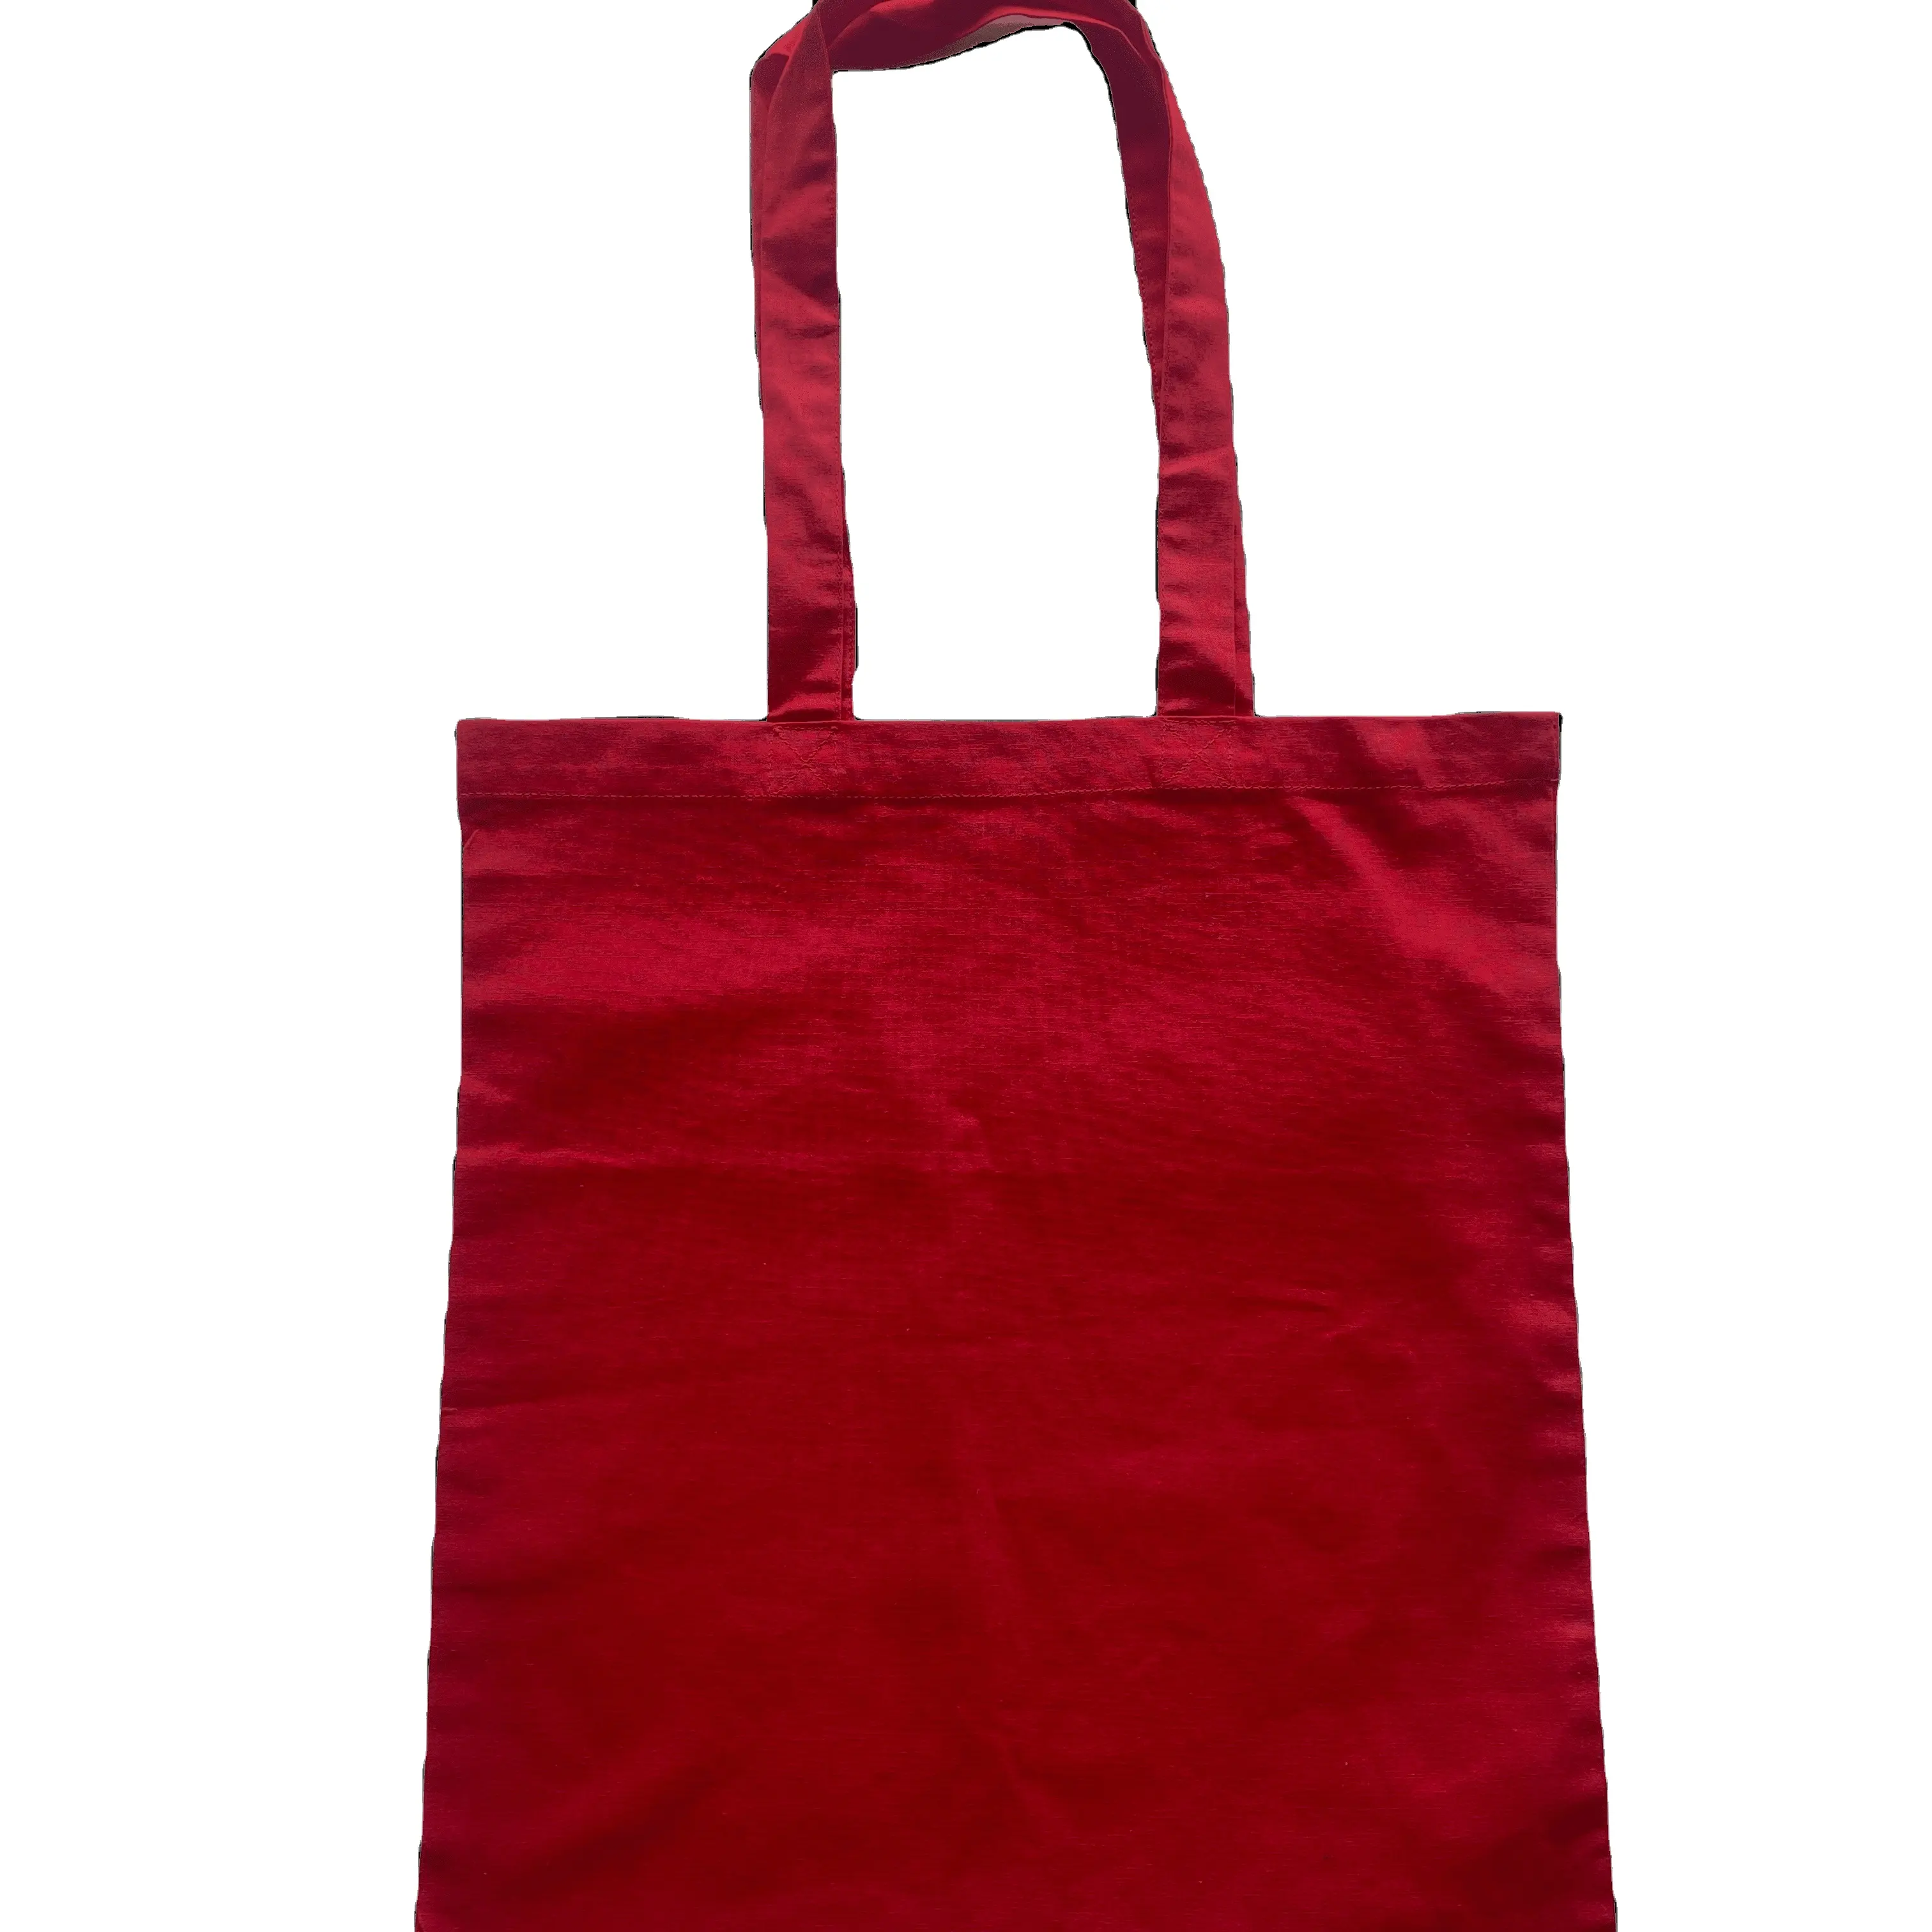 Tas Tote Unisex, Tote Bag merah elegan katun merah gaya kustom OEM pakaian cantik